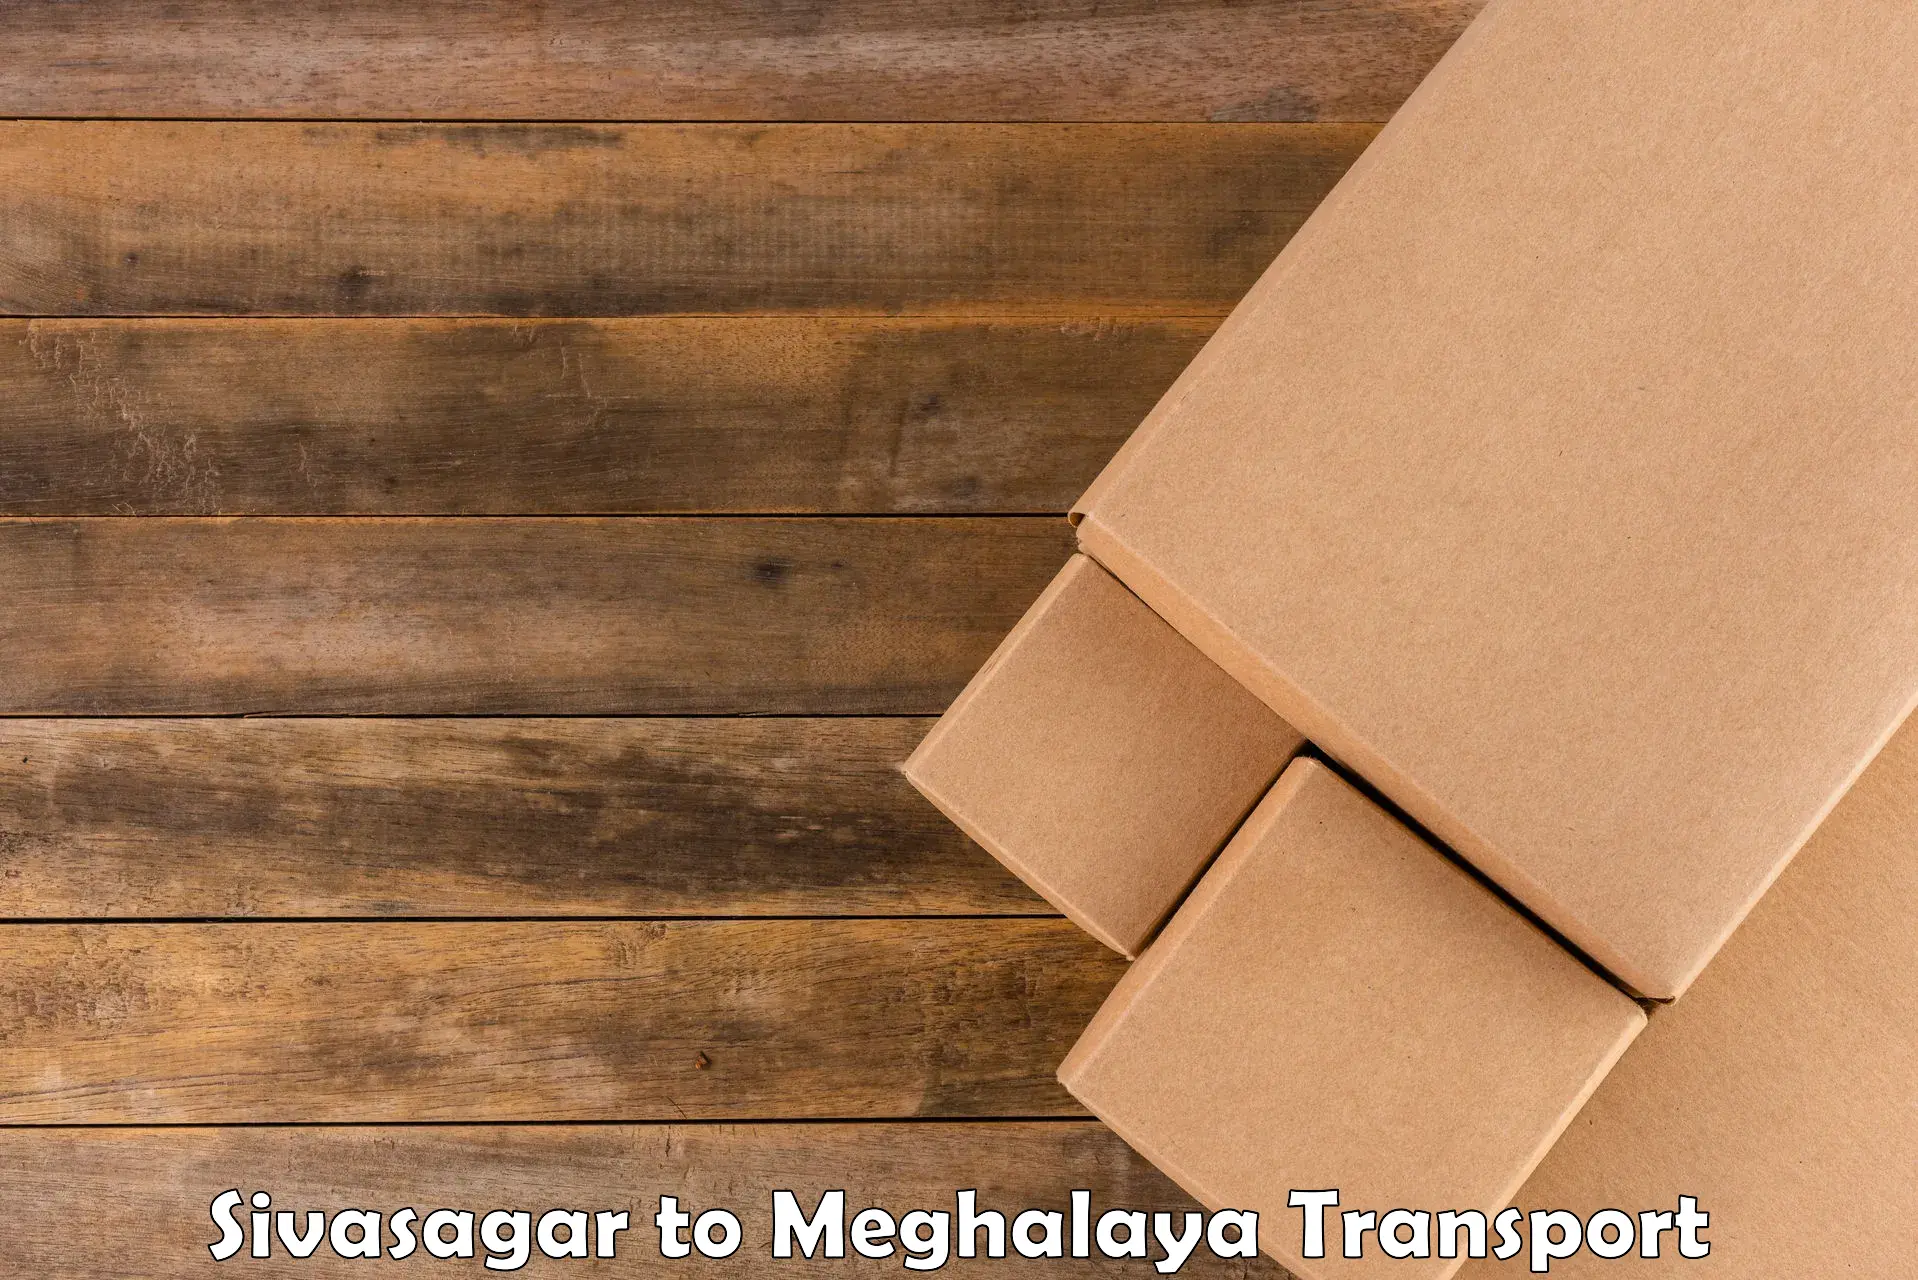 Shipping partner Sivasagar to Jowai